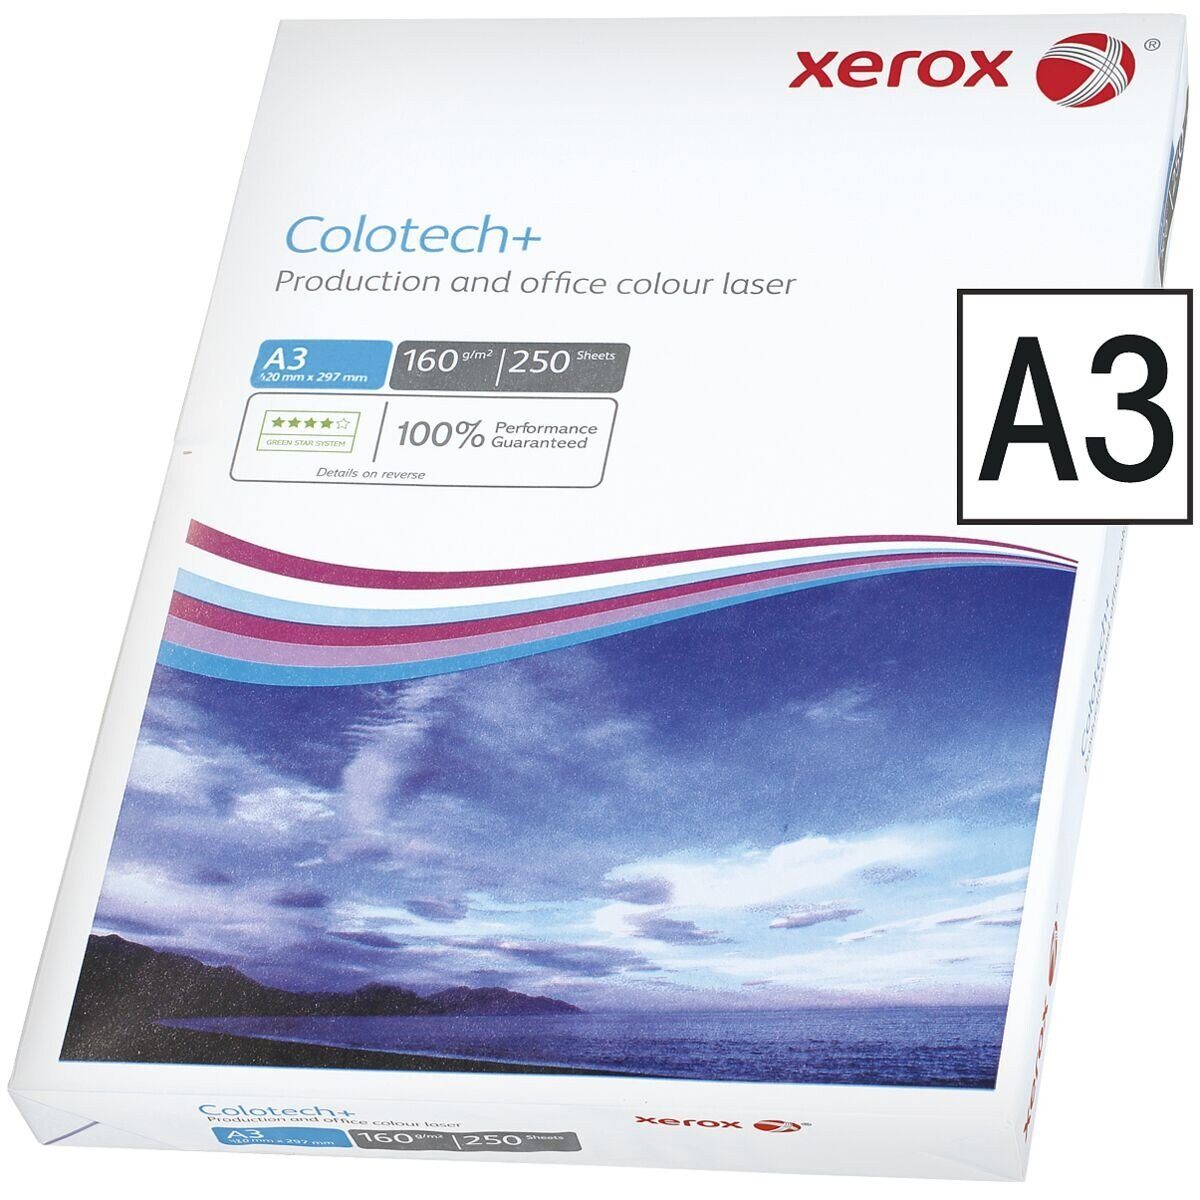 Xerox Farblaser-Druckerpapier Colotech+, Format DIN A3, 160 g/m², 250 Blatt